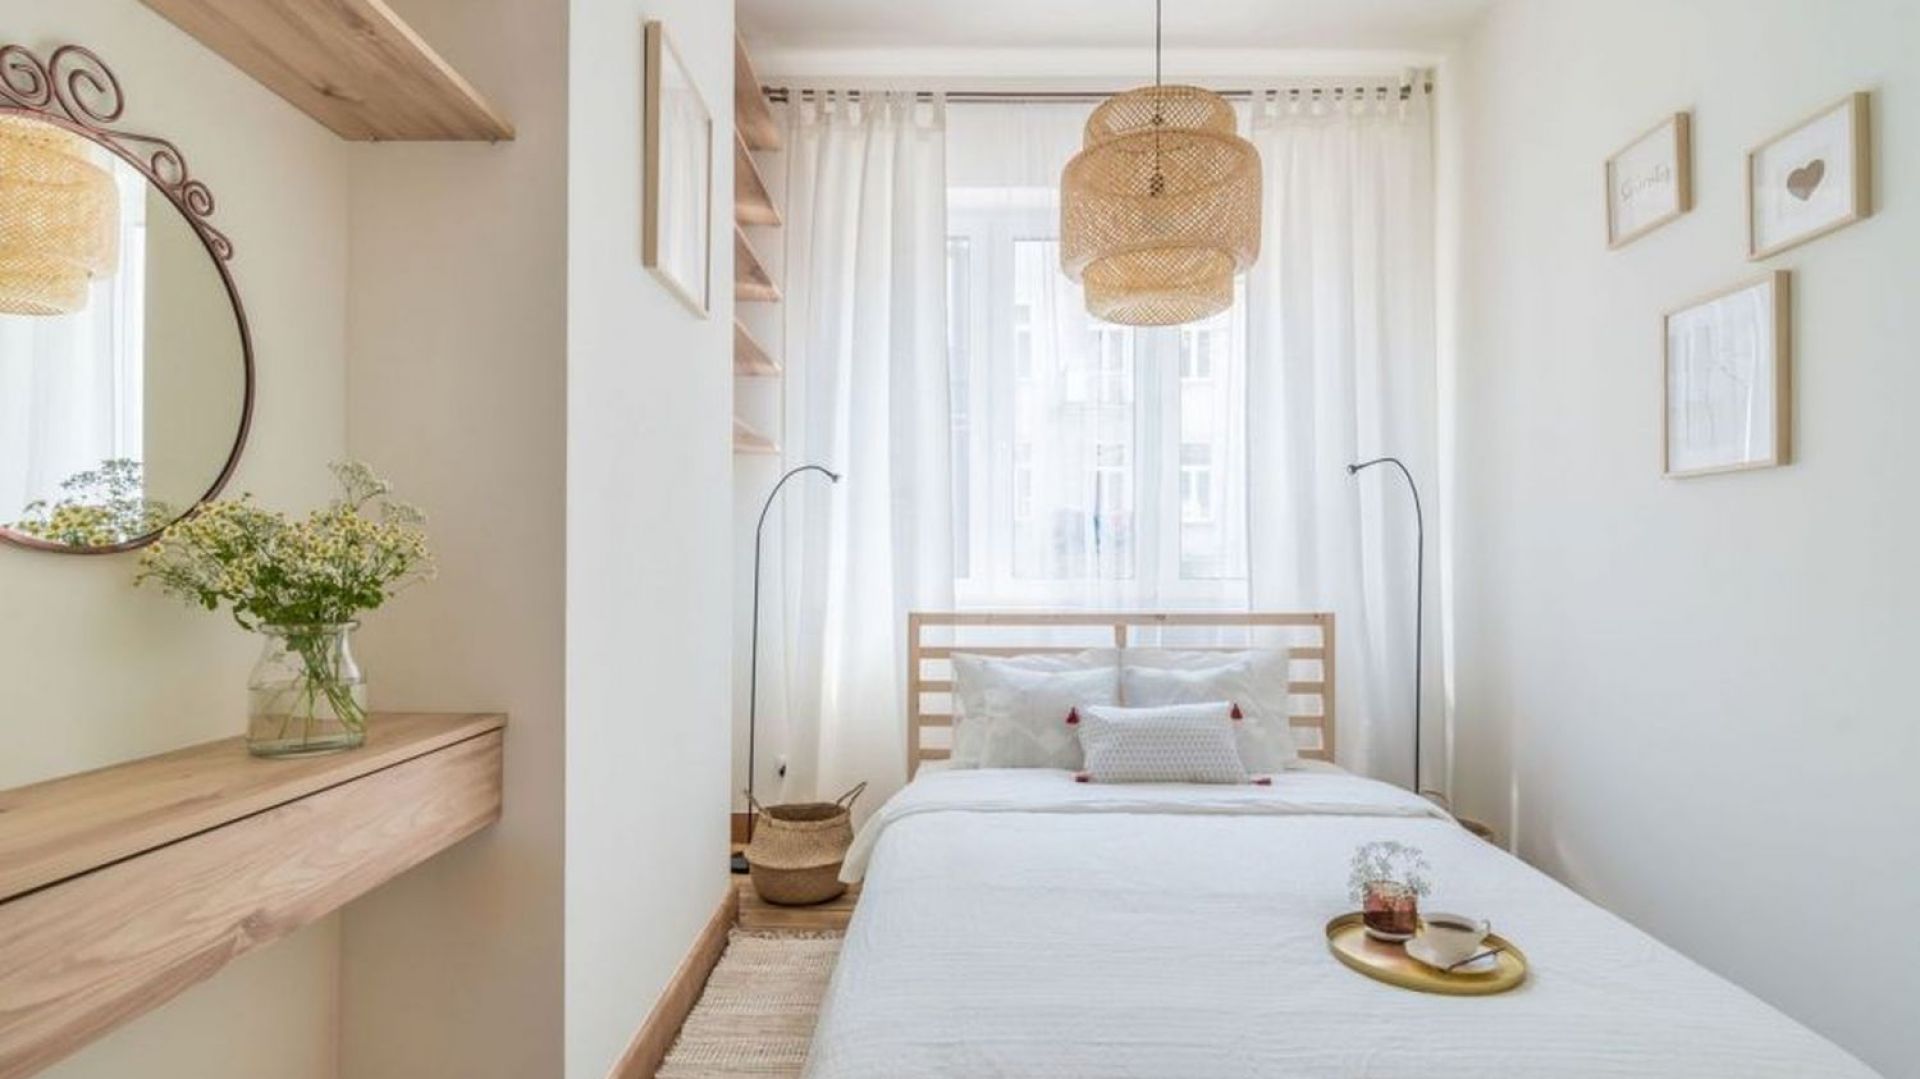 Jasna sypialnia. 10 pomysłów na sypialnię w stylu eko